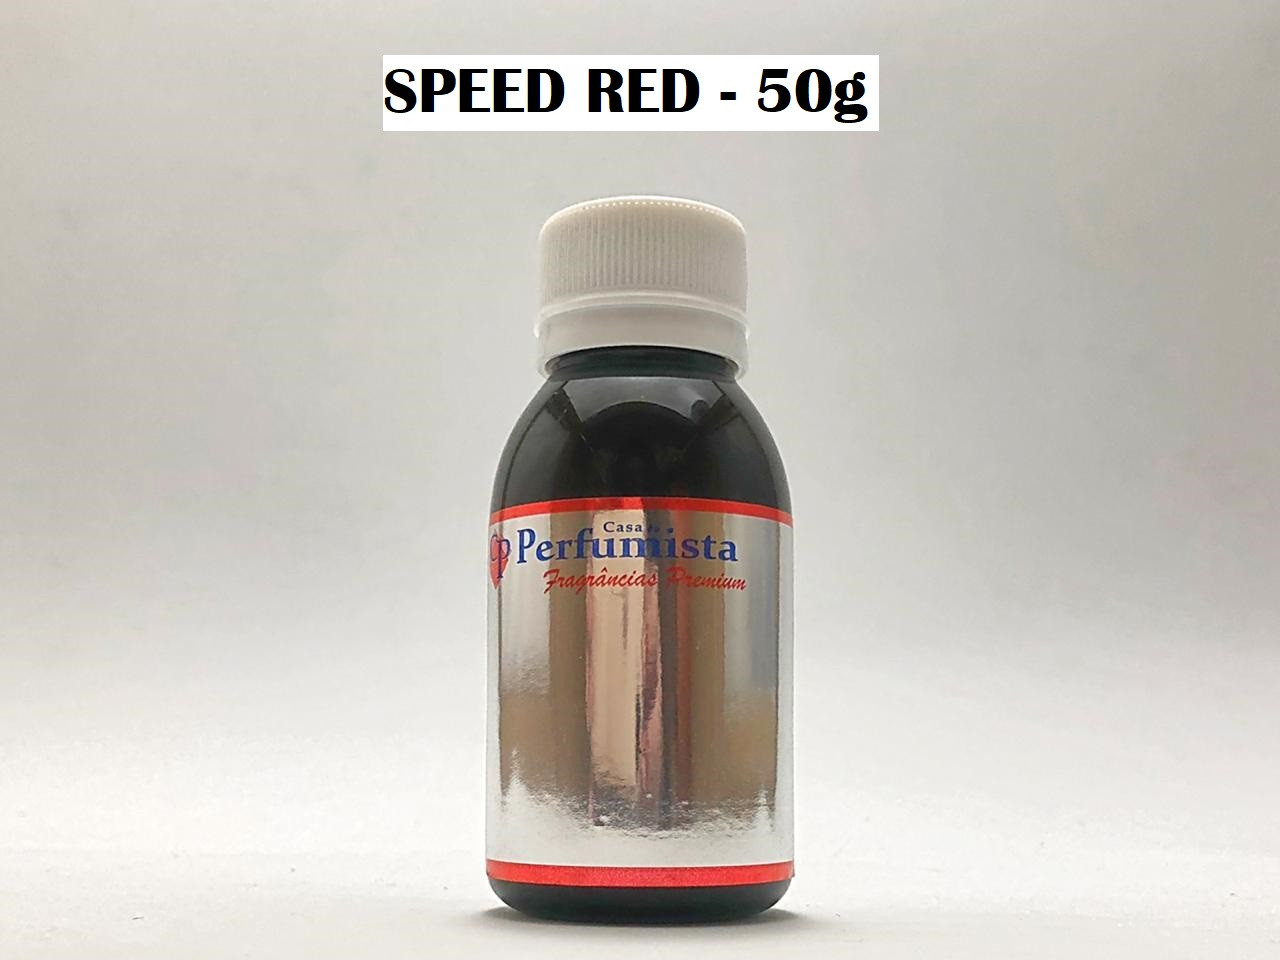 SPEED RED 50g - Inspiração: Ferrari Men in Red Masculino 